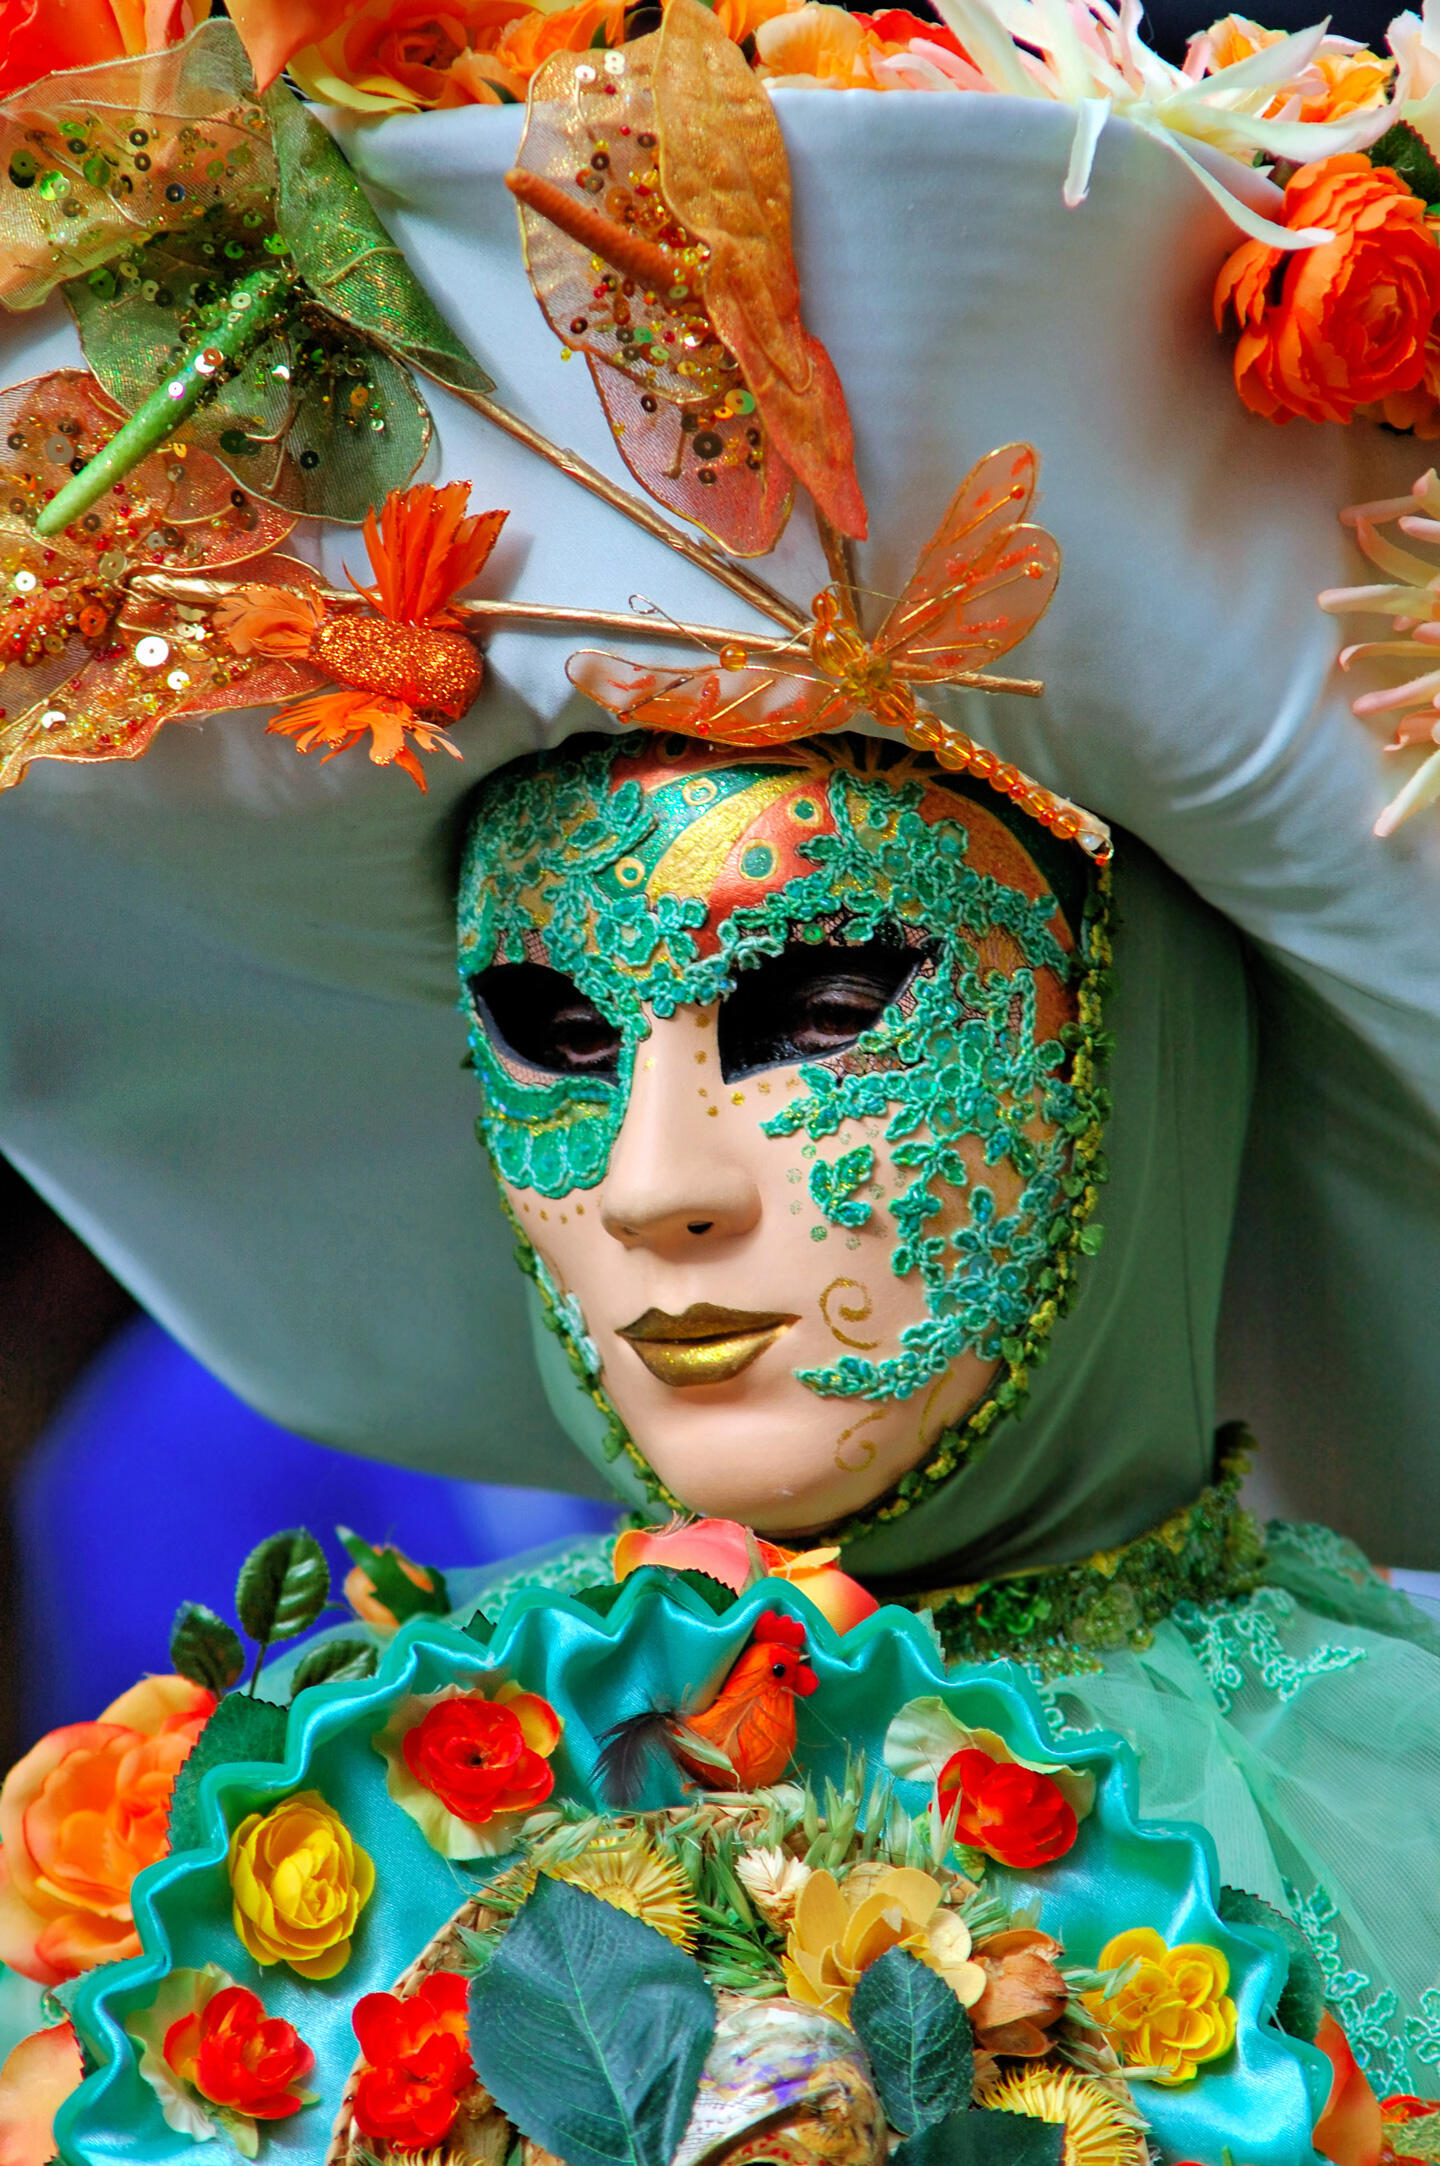 Teilnehmer mit einer aufwendigen grün-goldenen Maske, verziert mit Pailletten und Blumendekorationen, beim Weinfest von Montmartre.